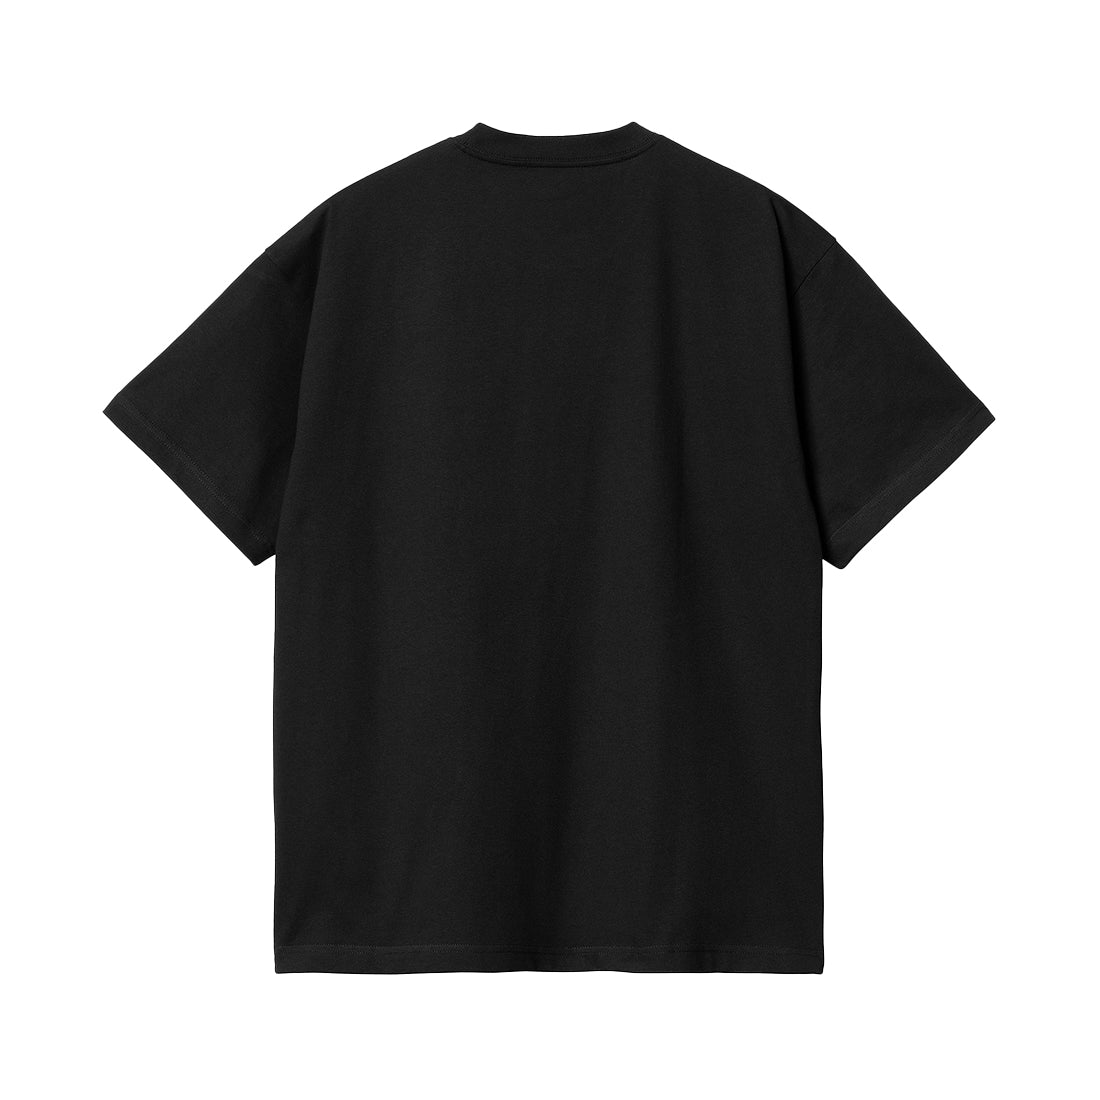 S/S Bubbles T-Shirt - Black/Turquoise